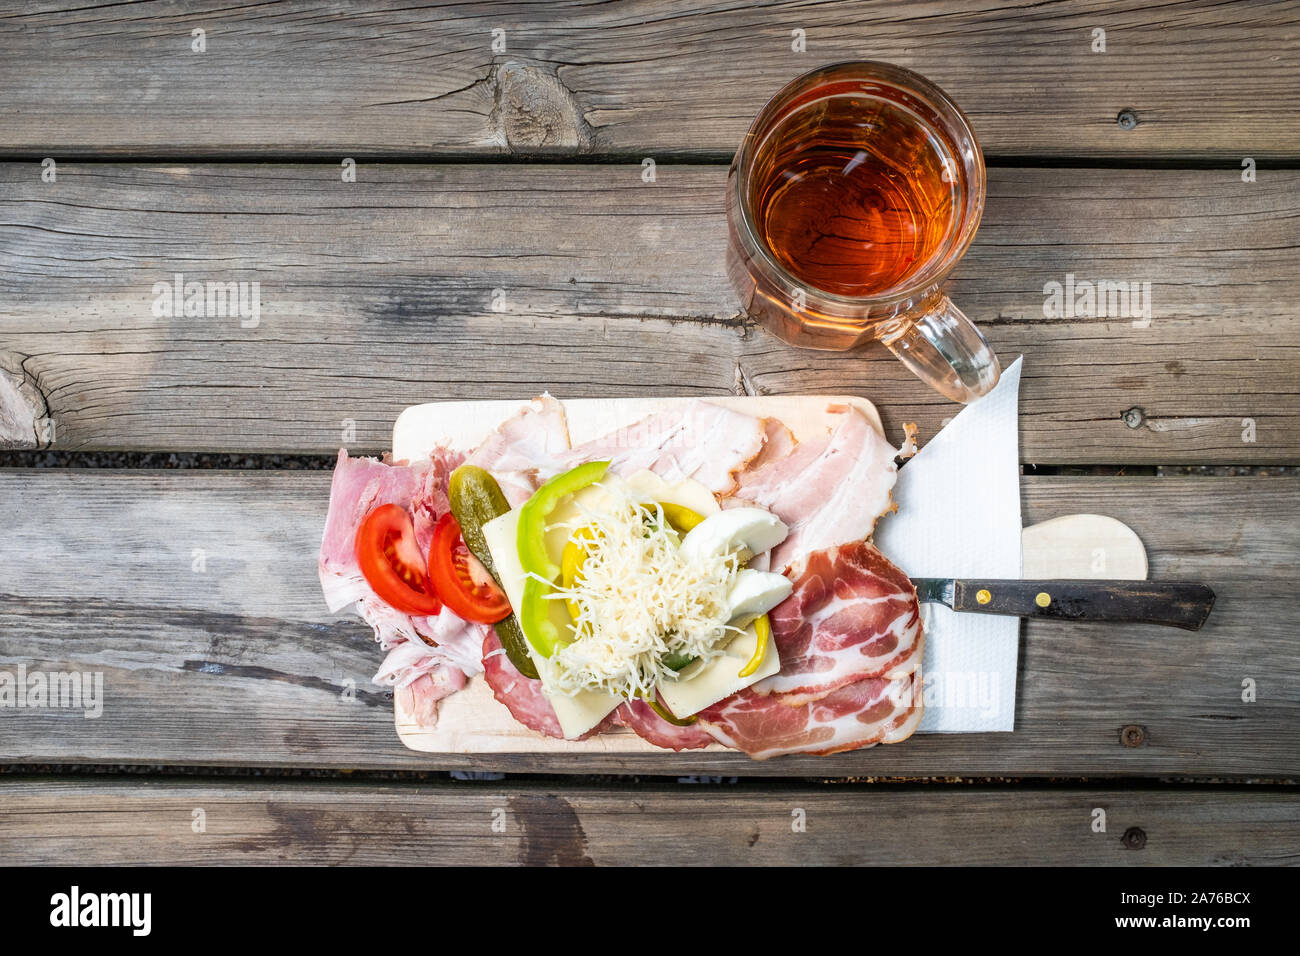 Brettljause, mit Essen, Käse, Gemüse Brot traditionelle steirische Sandwich belegt und ein Glas Wein auf hölzernen Tisch in Österreich Stockfoto